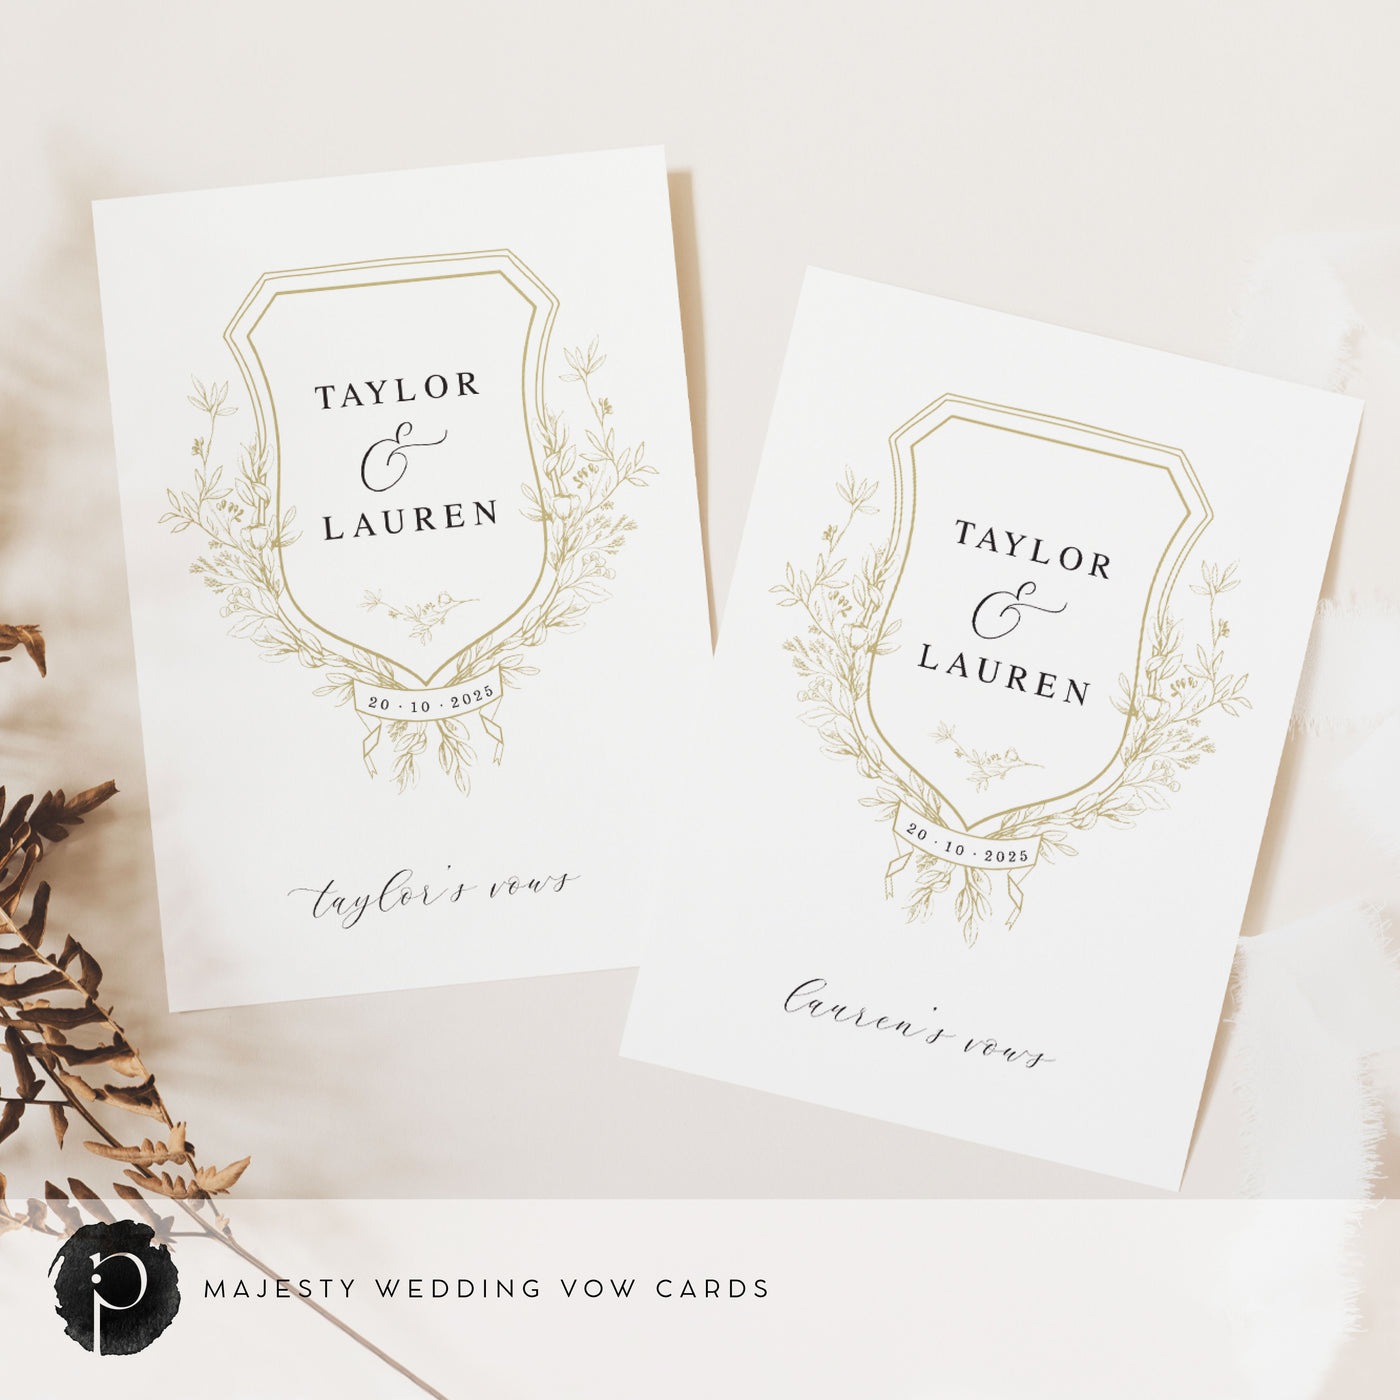 Majesty - Wedding Vow Card Set